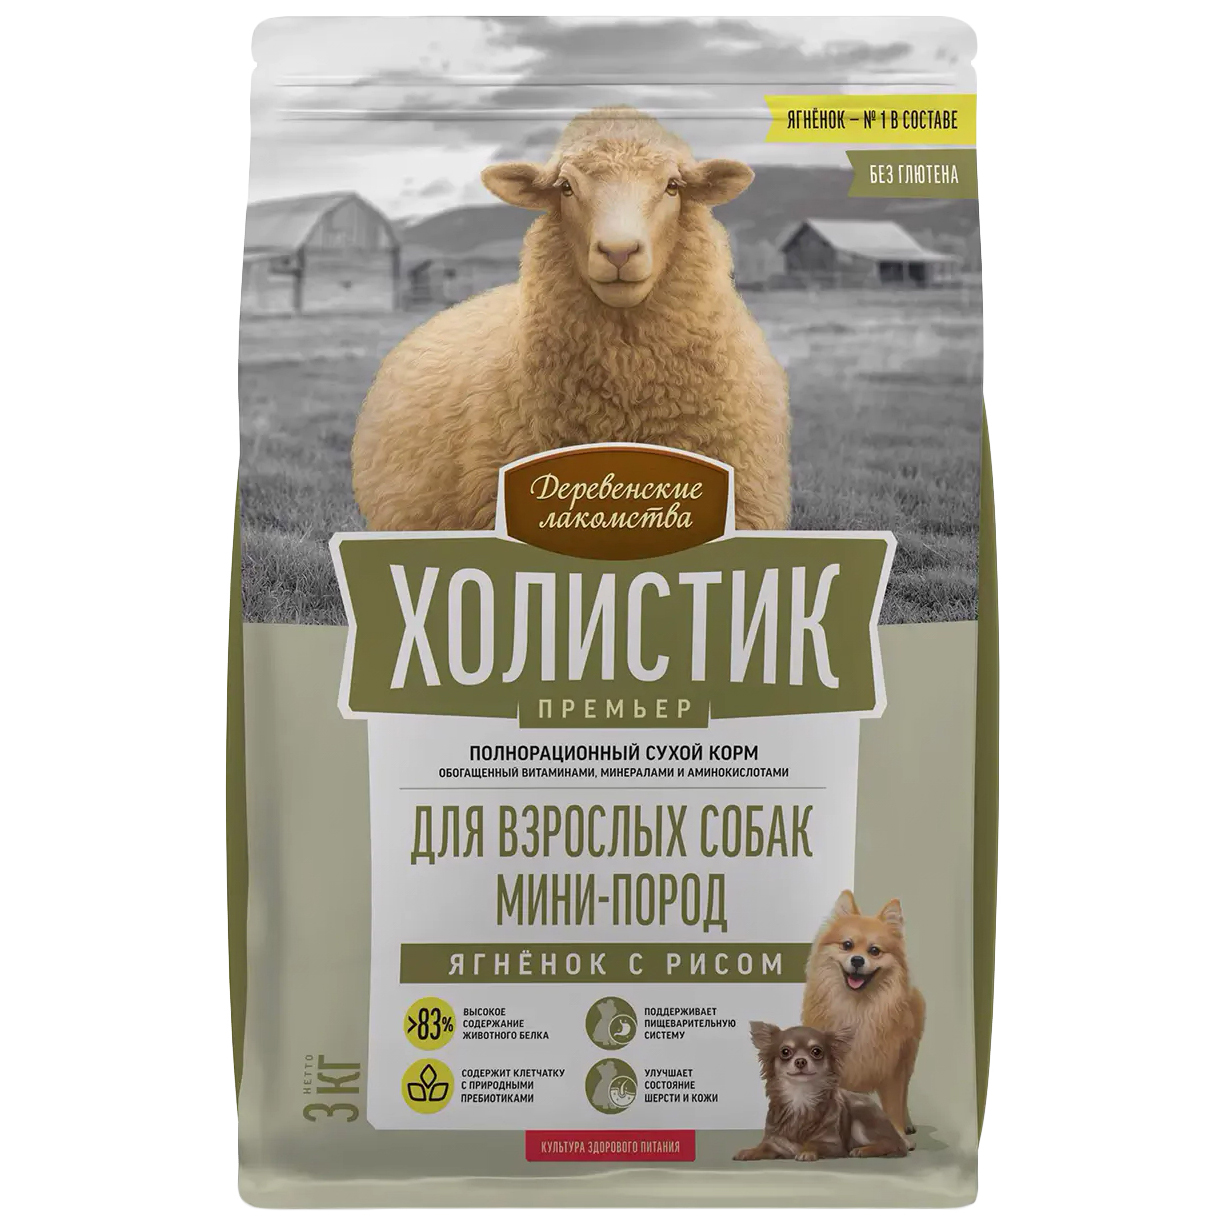 Сухой корм для собак Деревенские лакомства Холистик Премьер ягненок и рис 3 кг